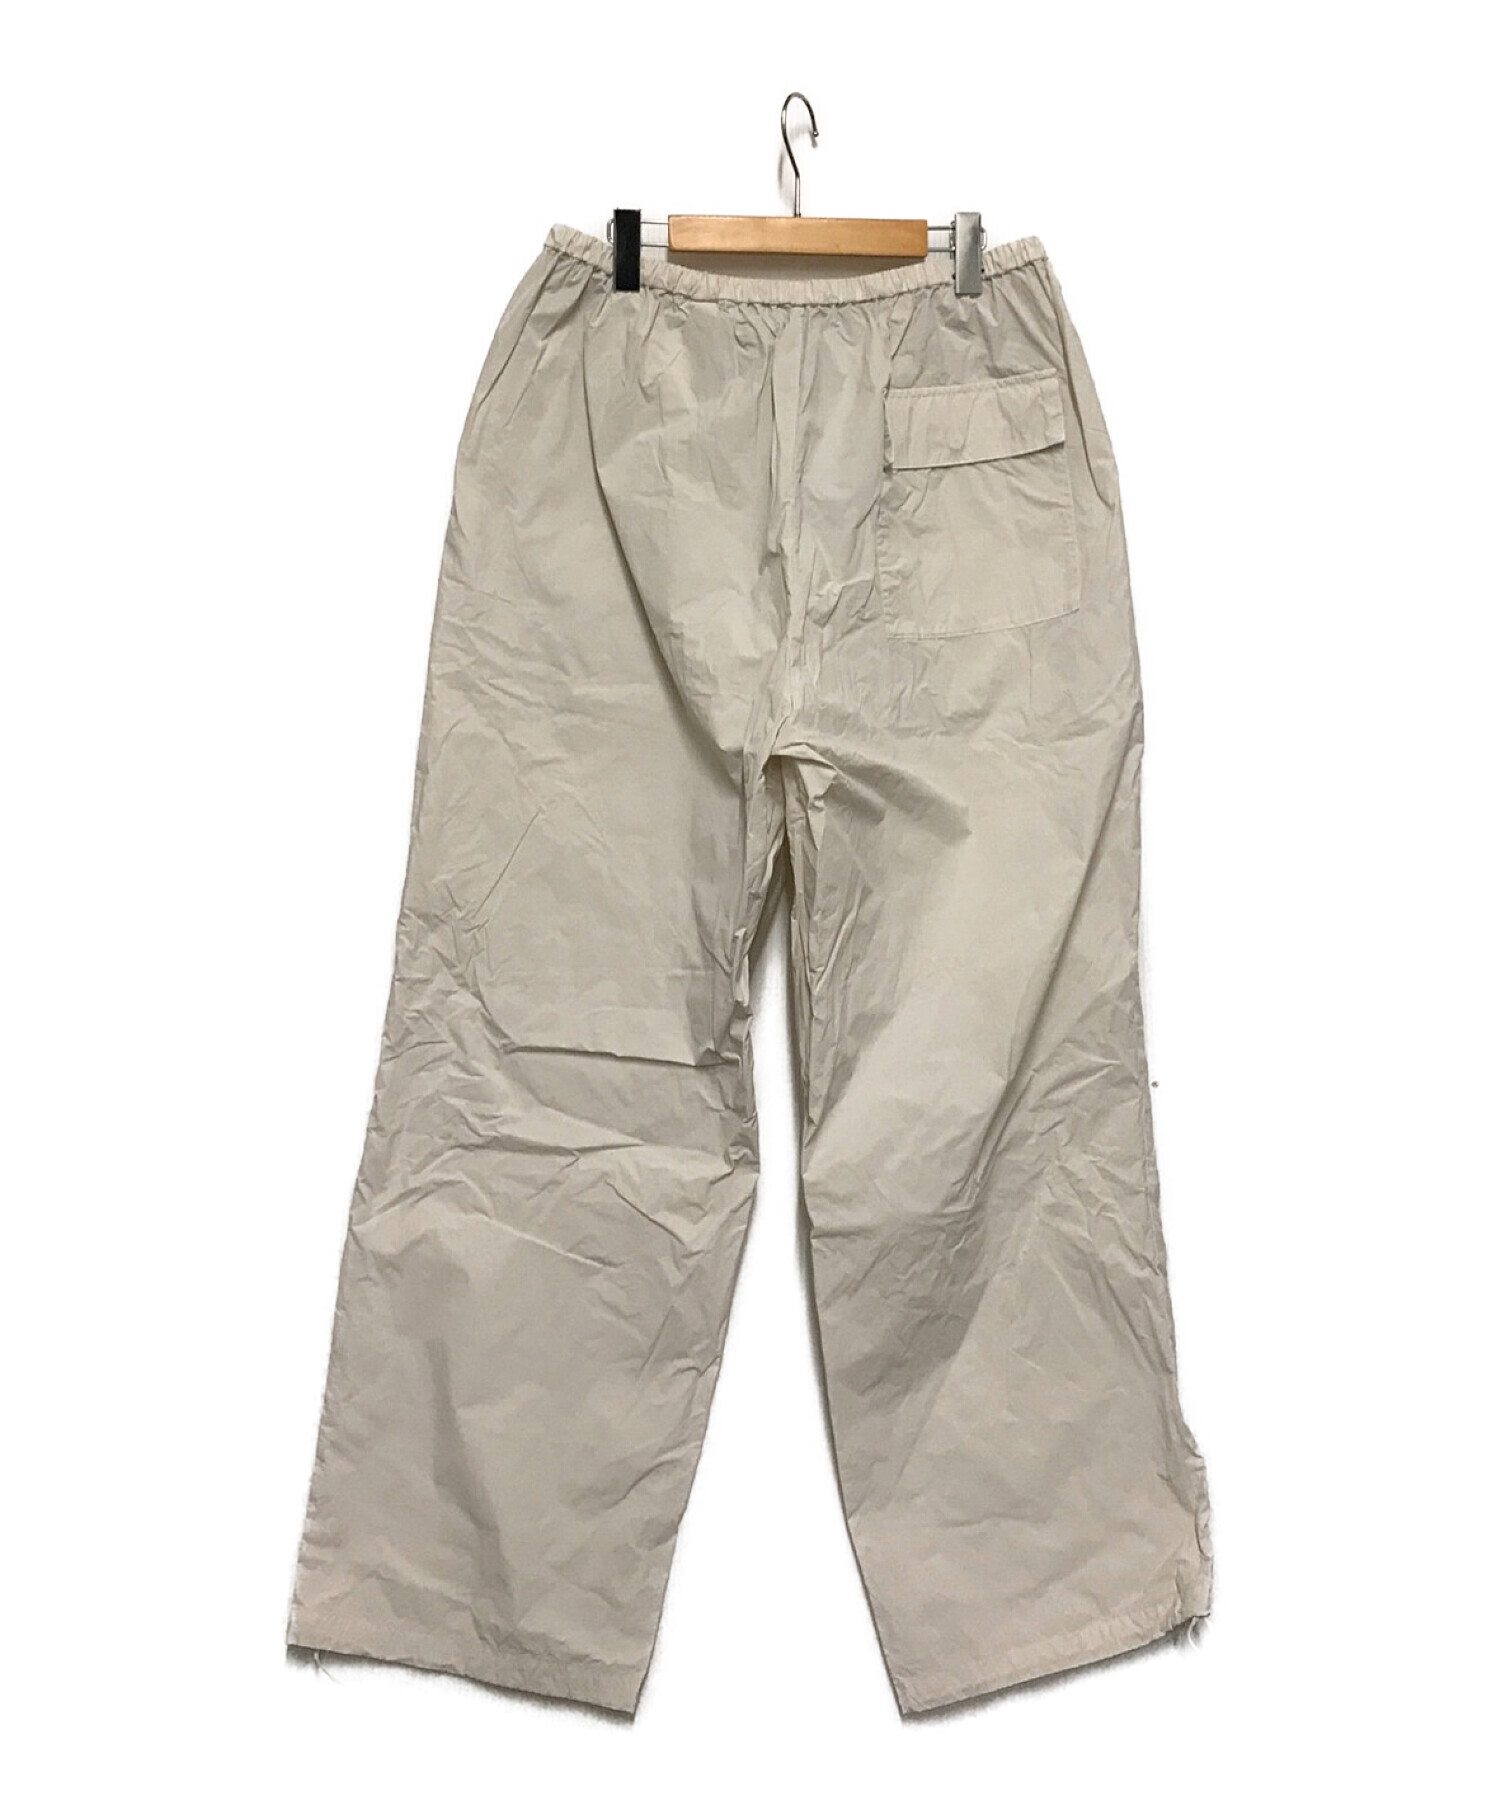 ATON (エイトン) ventile nylon snow pants アイボリー サイズ:6